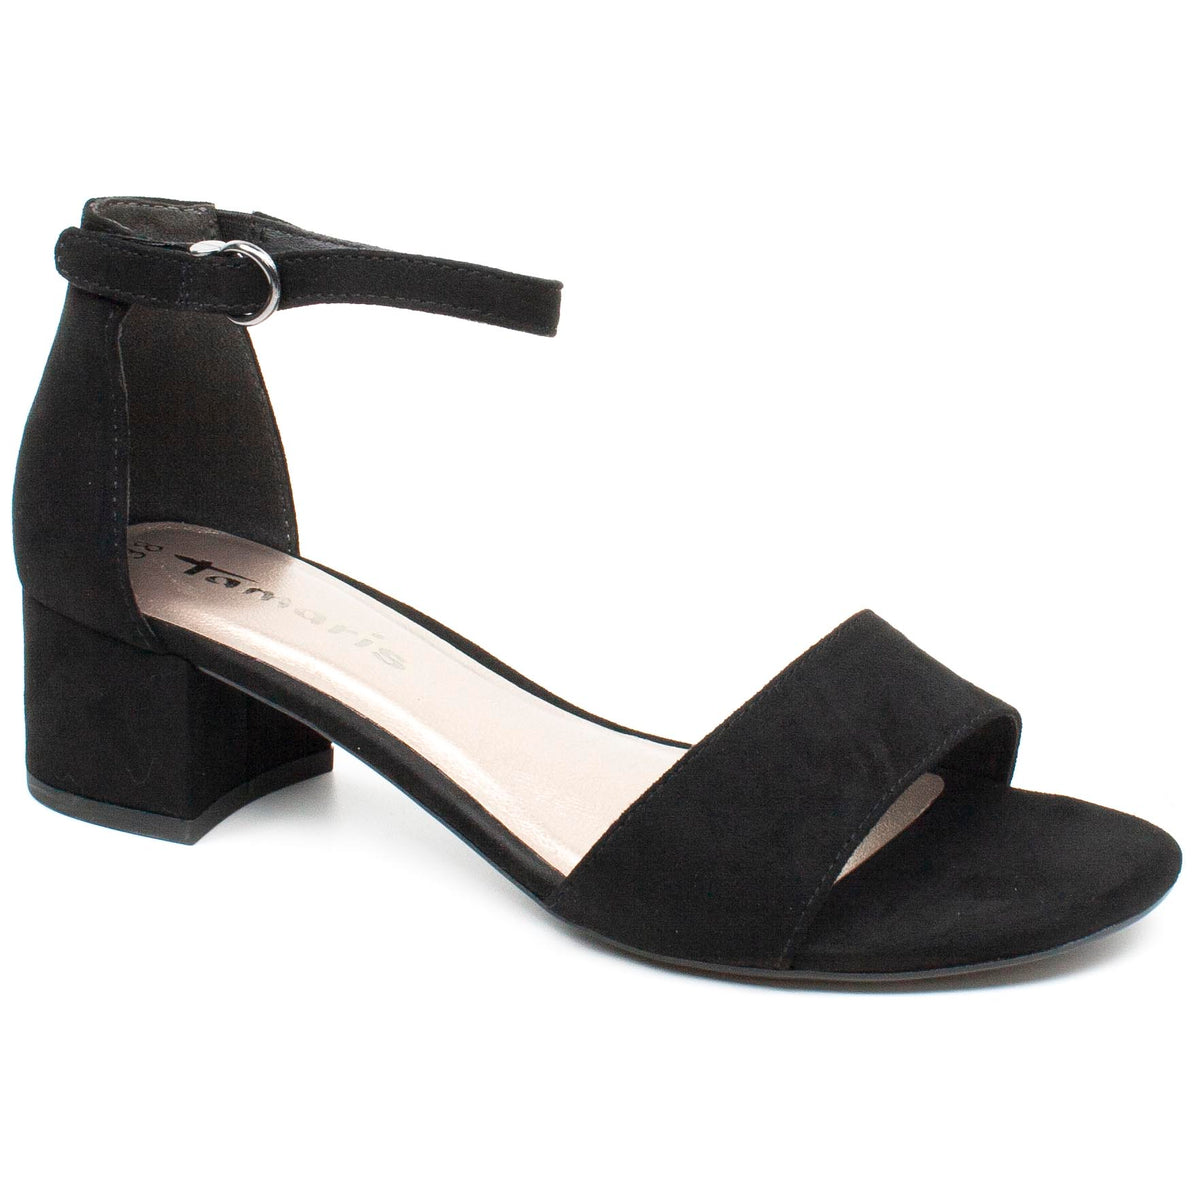 Tamaris sandale dama elegante 1 28201 26 negru ID2398-NG